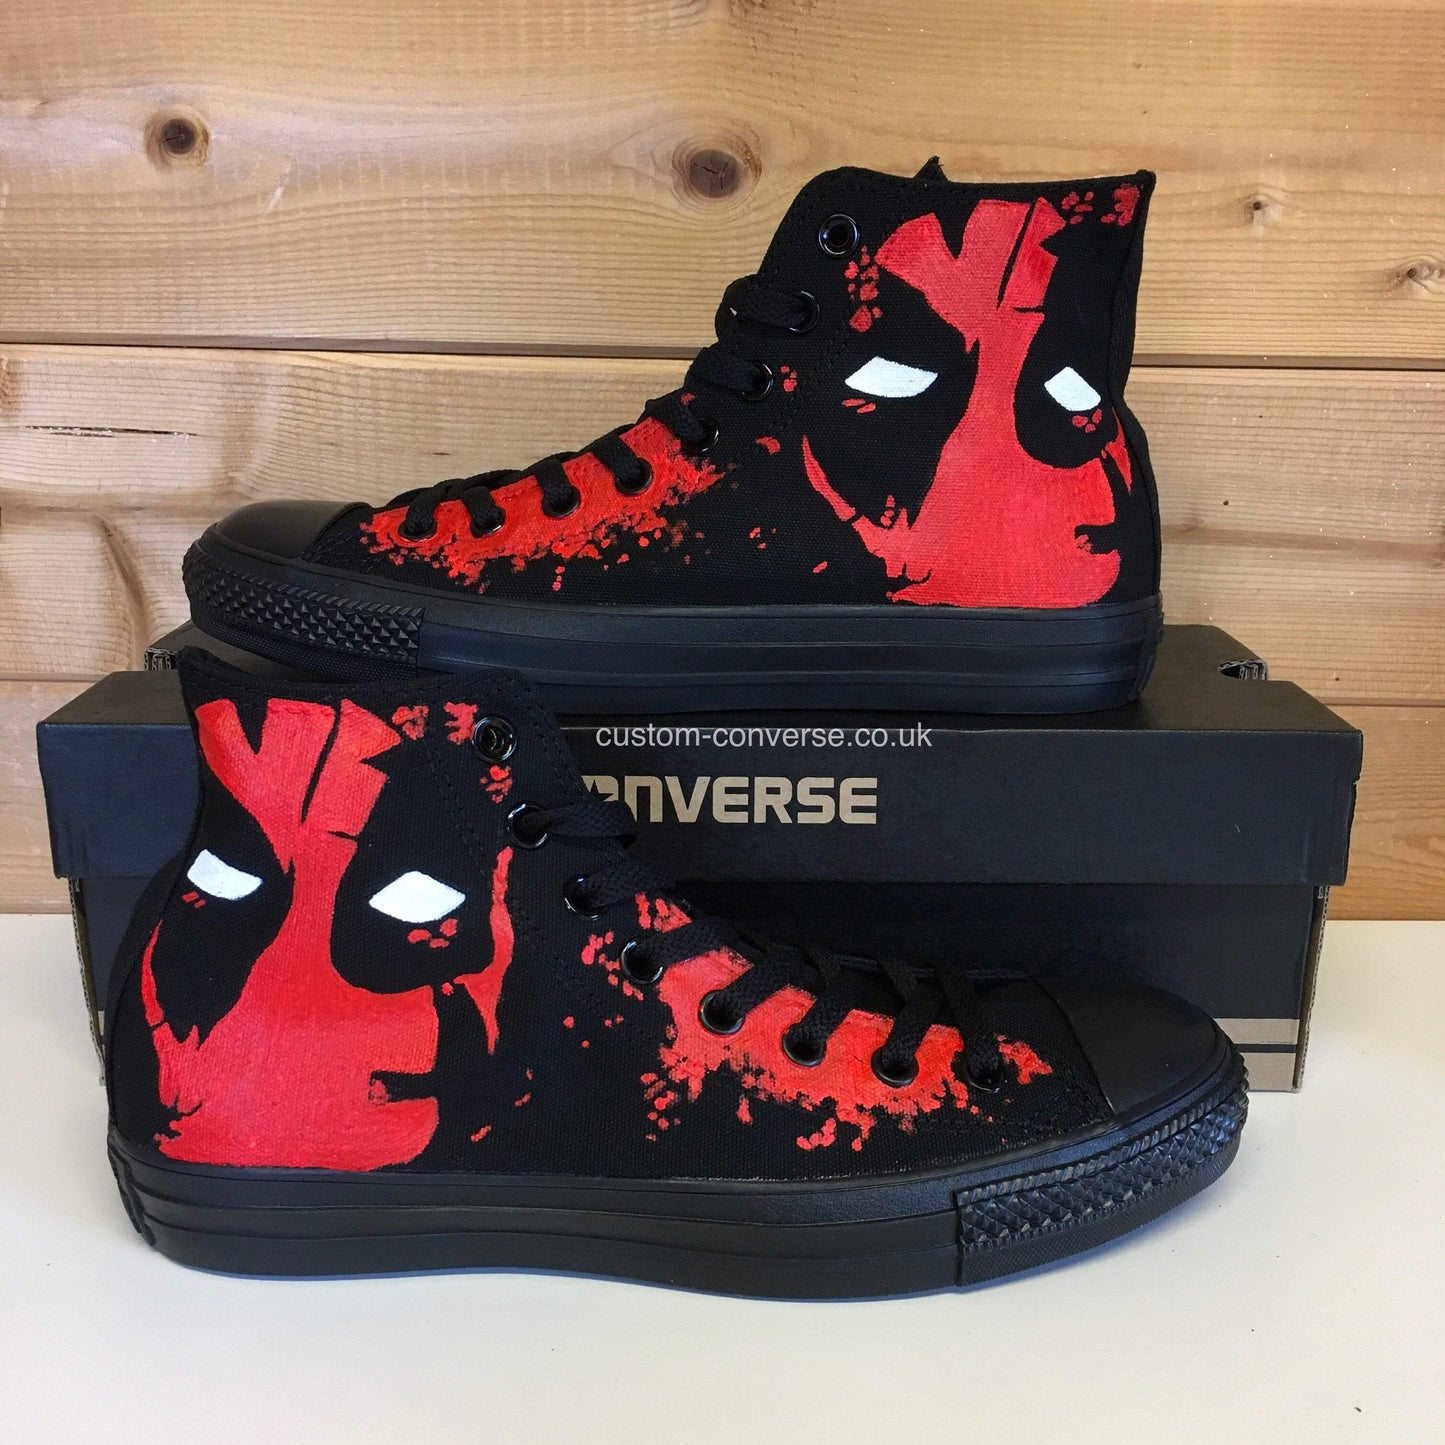 Deadpool - Custom Converse Ltd.